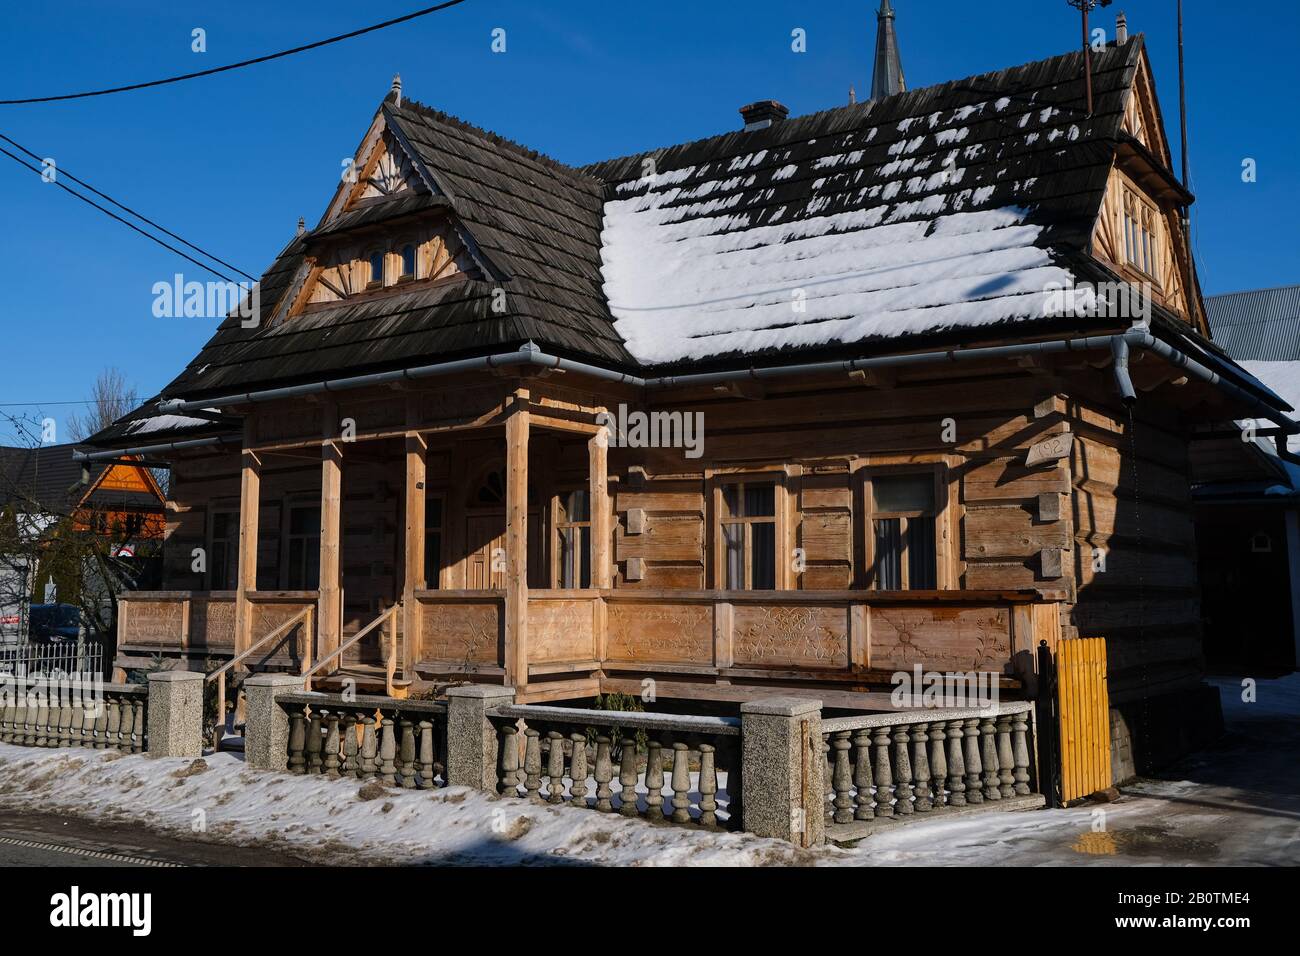 Pologne, Zakopane, Chocholow- 16 février 2020: Les huttes historiques en bois de Chocholow appelées la "Perle de Podhale", un musée en plein air, le patronage de l'UNESCO Banque D'Images